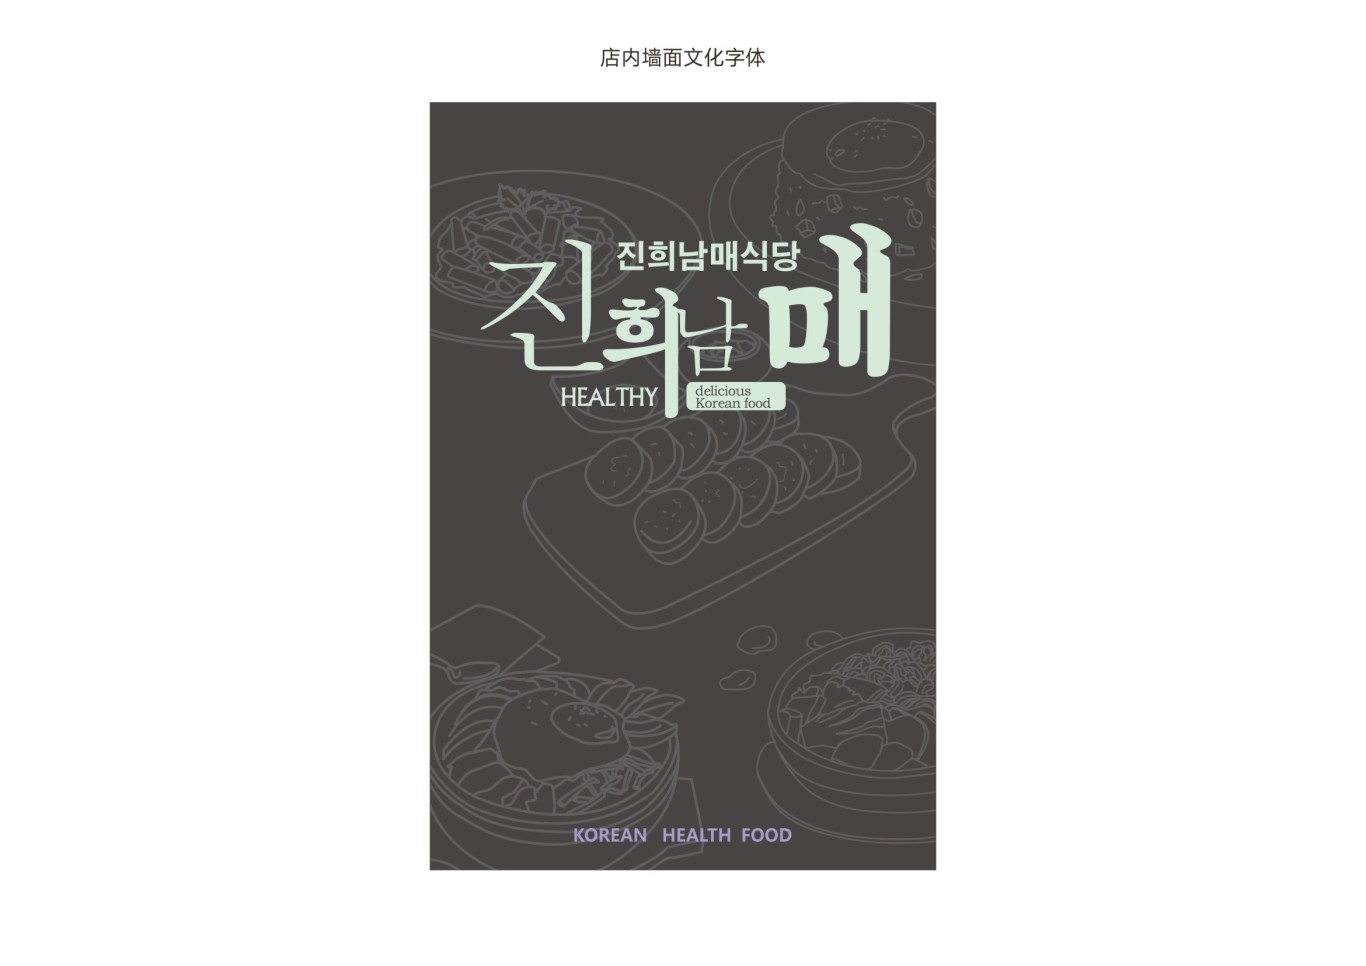 韩式简餐连锁品牌设计图21